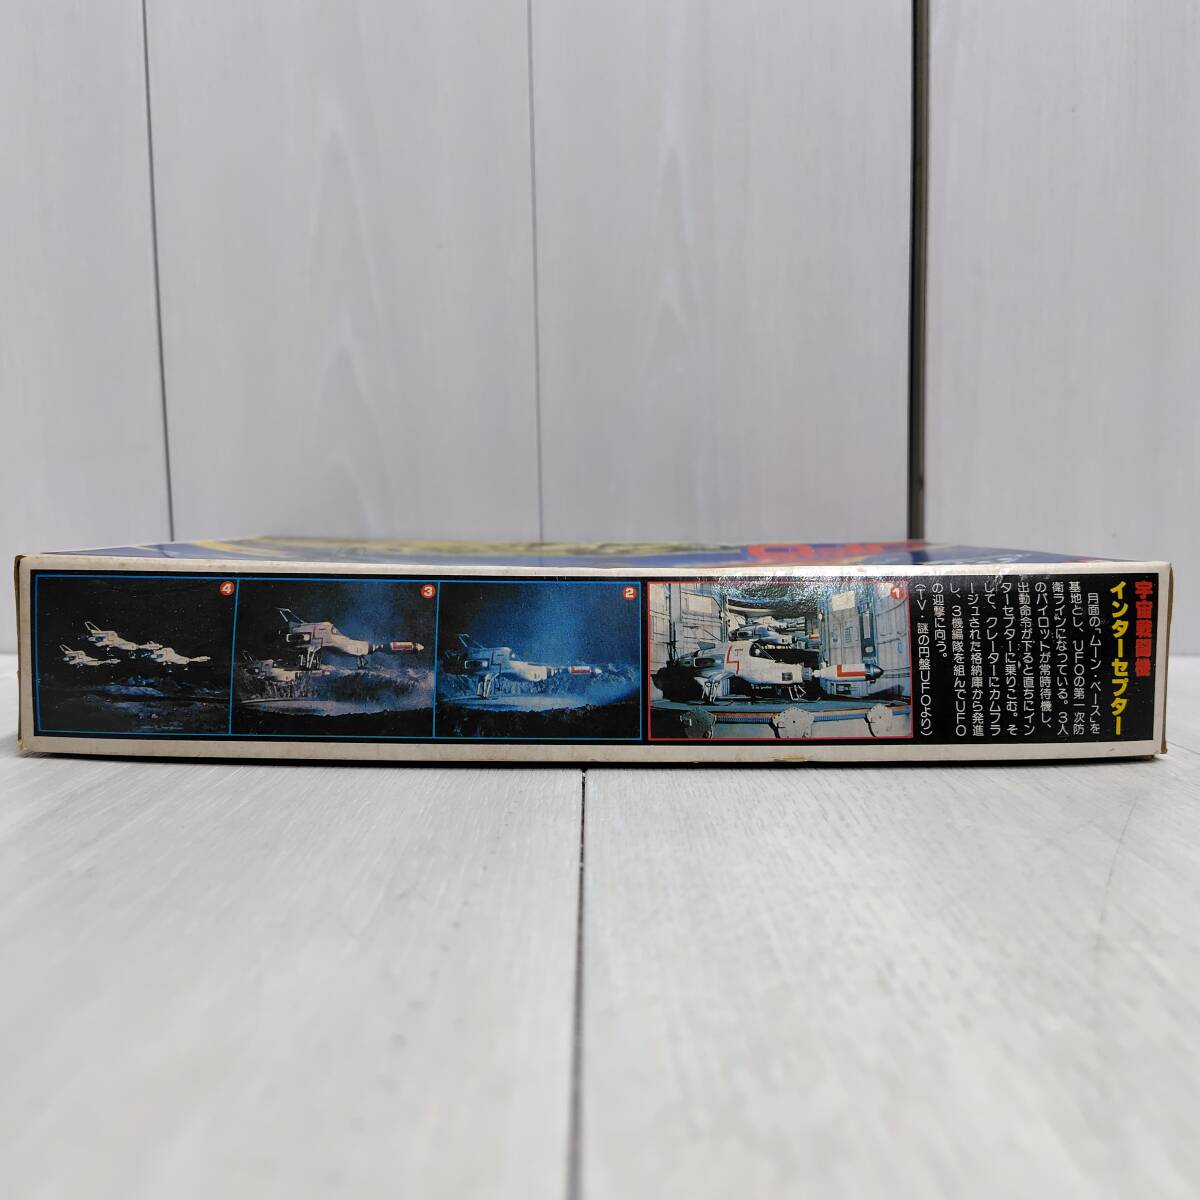 【 送料無料 】 未組立 ◆ BANDAI 謎の円盤UFO インターセプター ディスプレイモデル 36120 バンダイ INTERCEPTOR 宇宙戦闘機 プラモ 模型_画像7